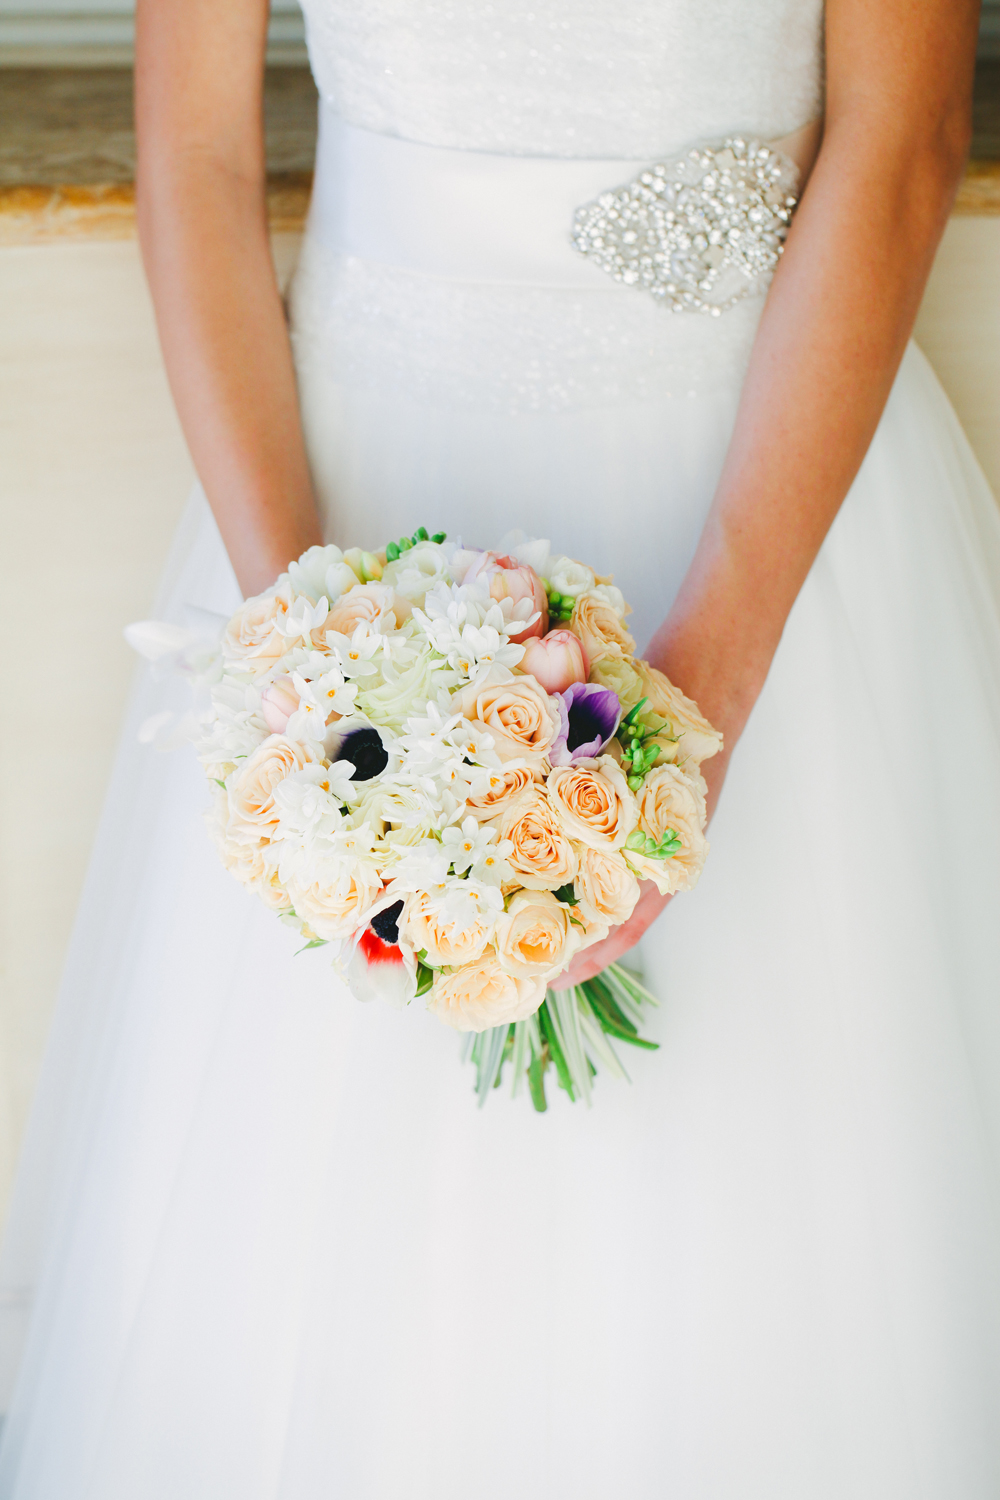 bouqets rotondo sposa, bouquets invernali, ispirazioni bouquets sposa, bouquets sposa con anemoni.